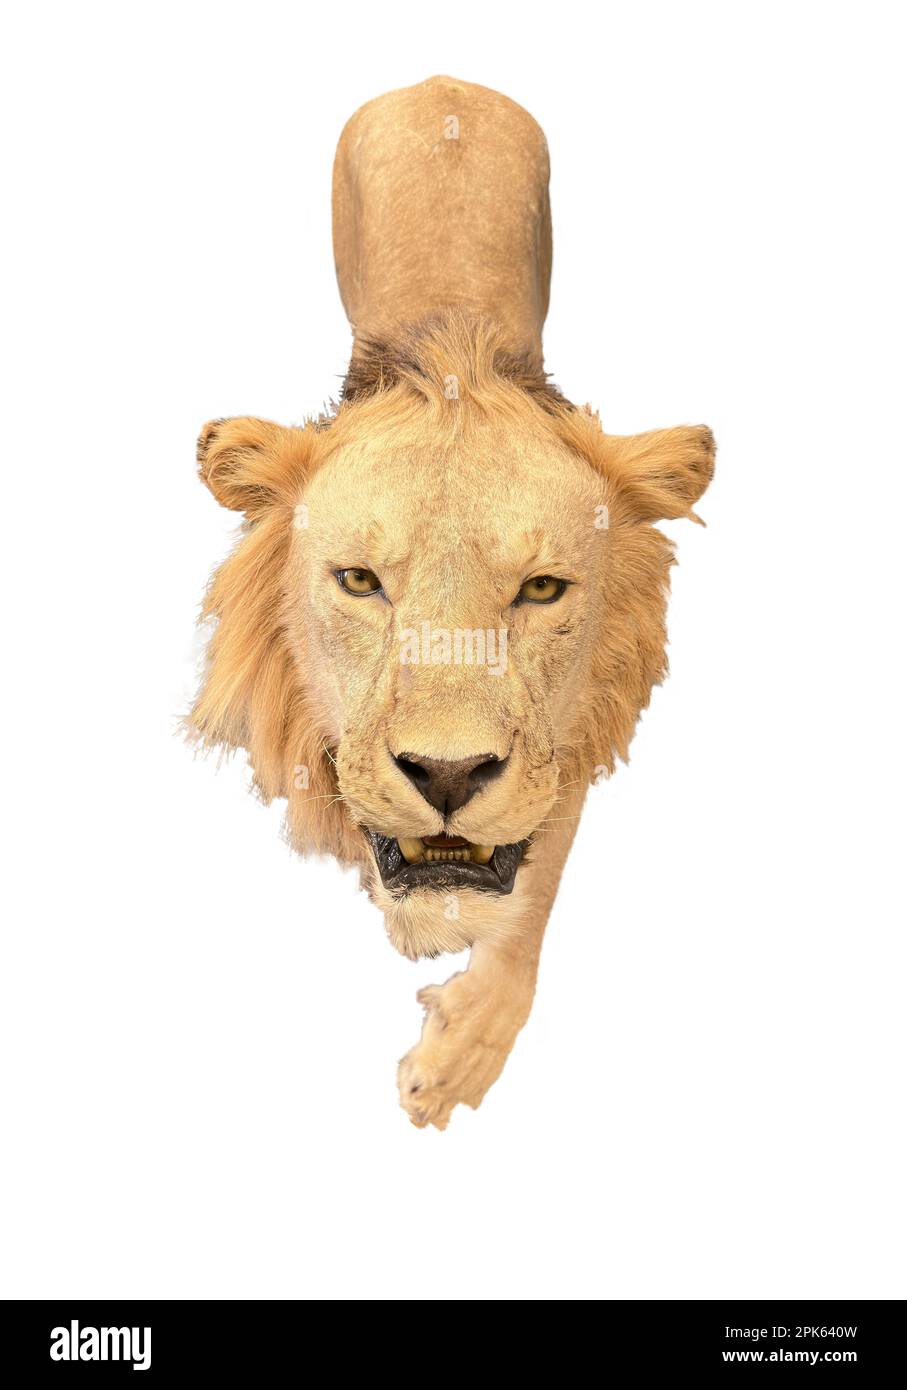 Le lion de taxidermie est isolé et marche en avant avec les salaires surchargés. Sa tête et sa manie, ses yeux et son museau dominent sur la photo. Banque D'Images